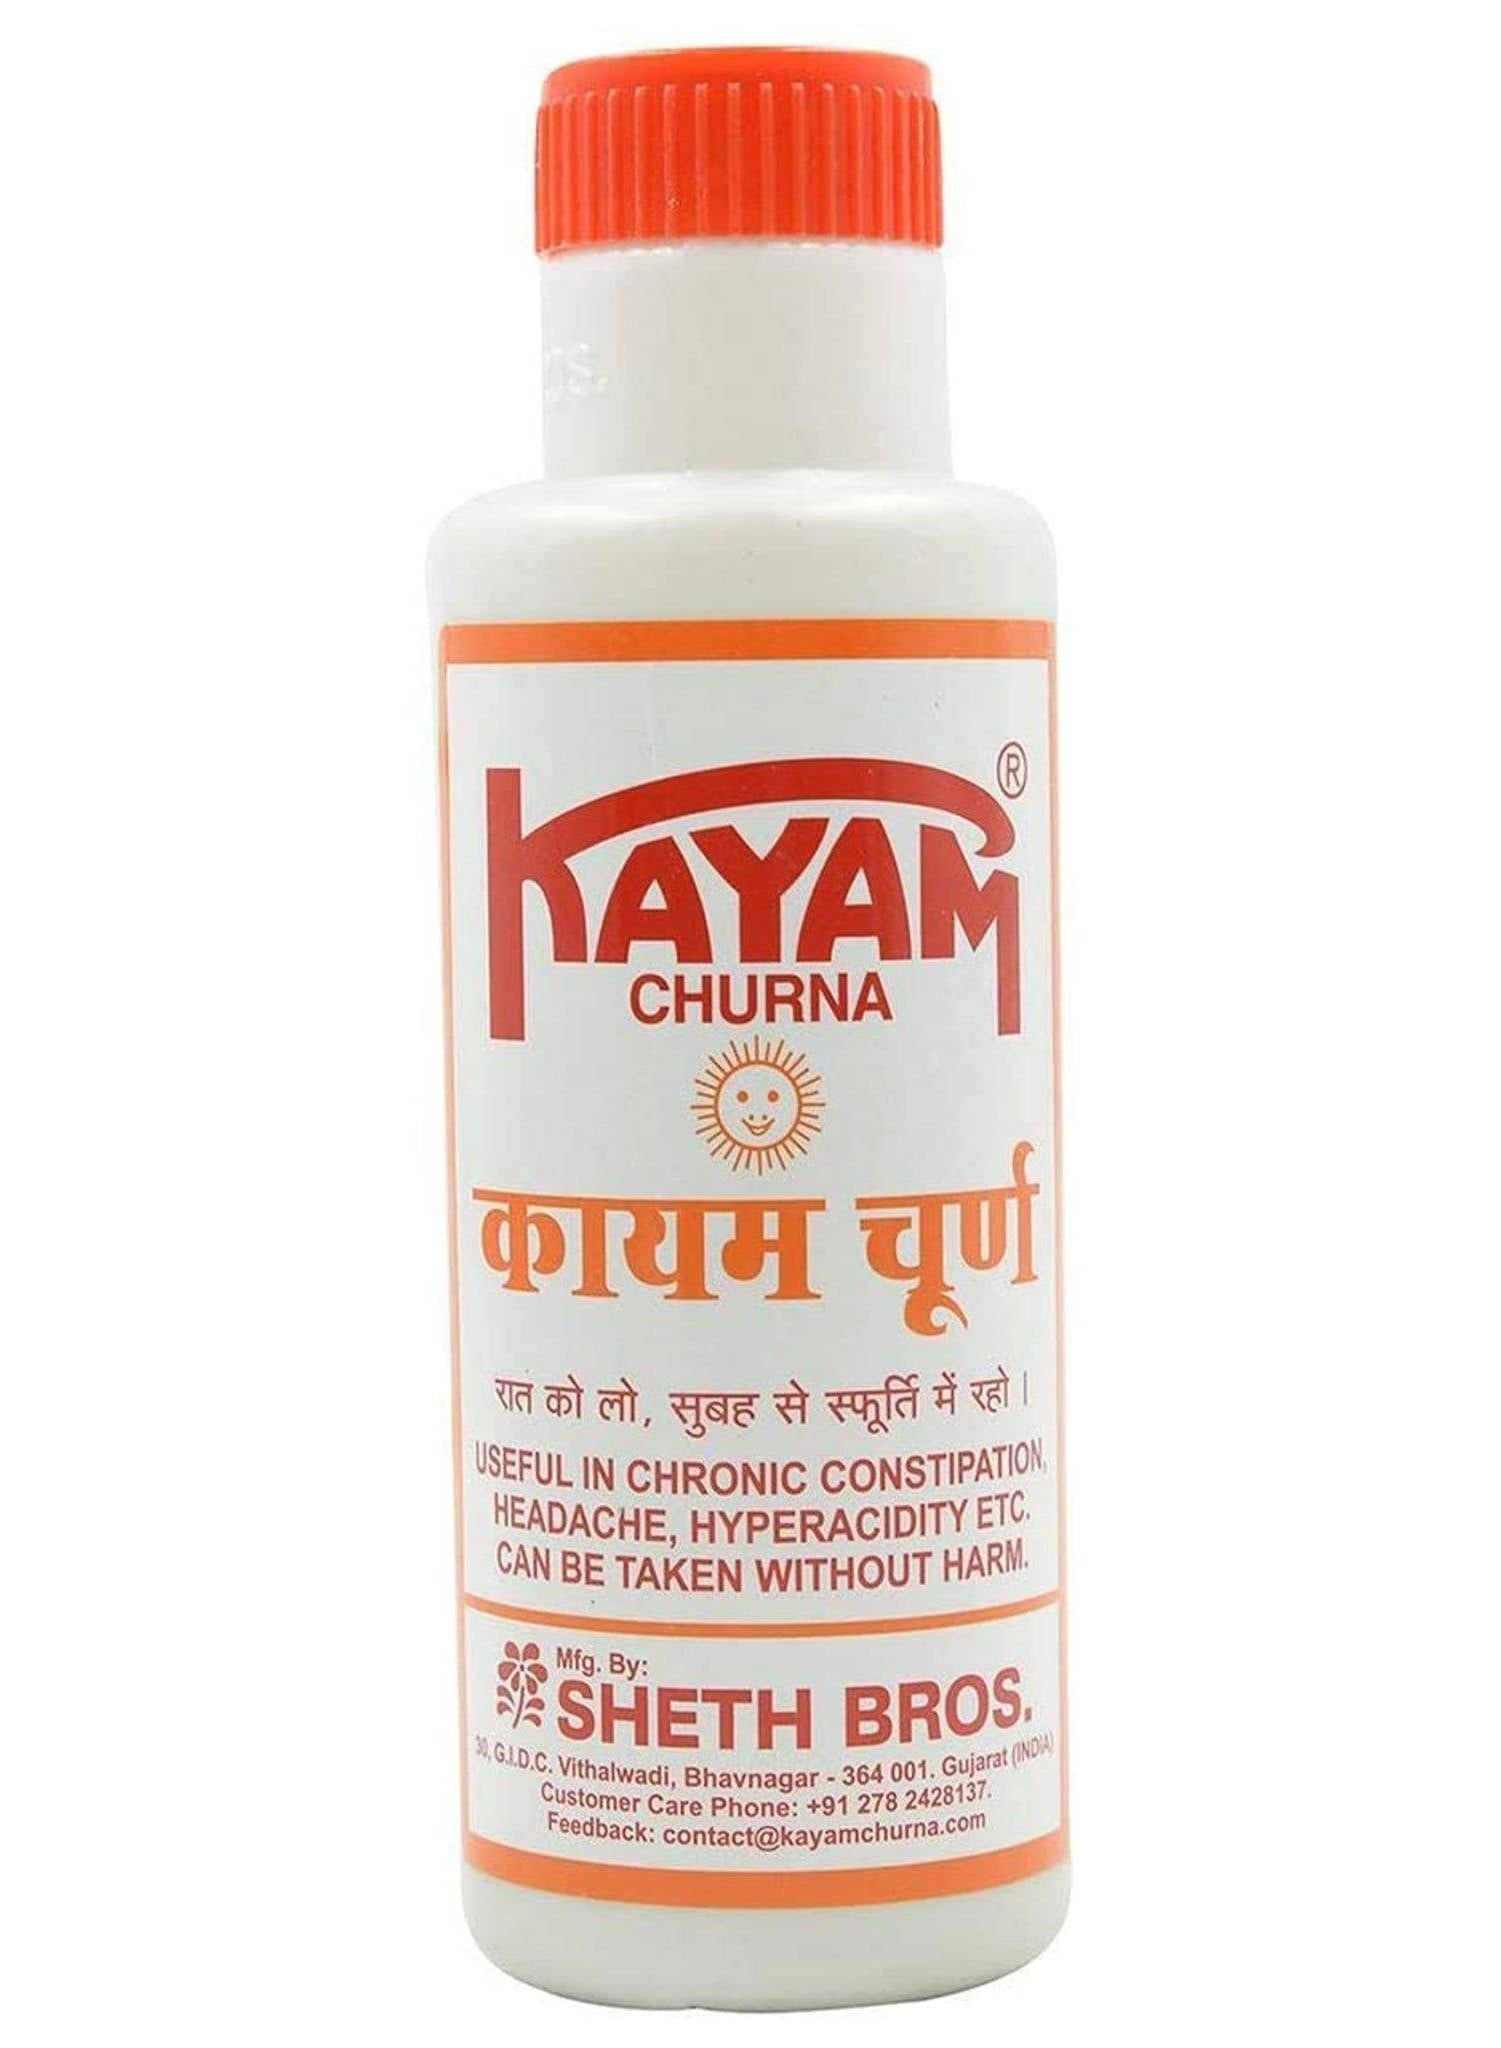 Shreth Bros Kayam Churna 100 gm Value Pack of 2 